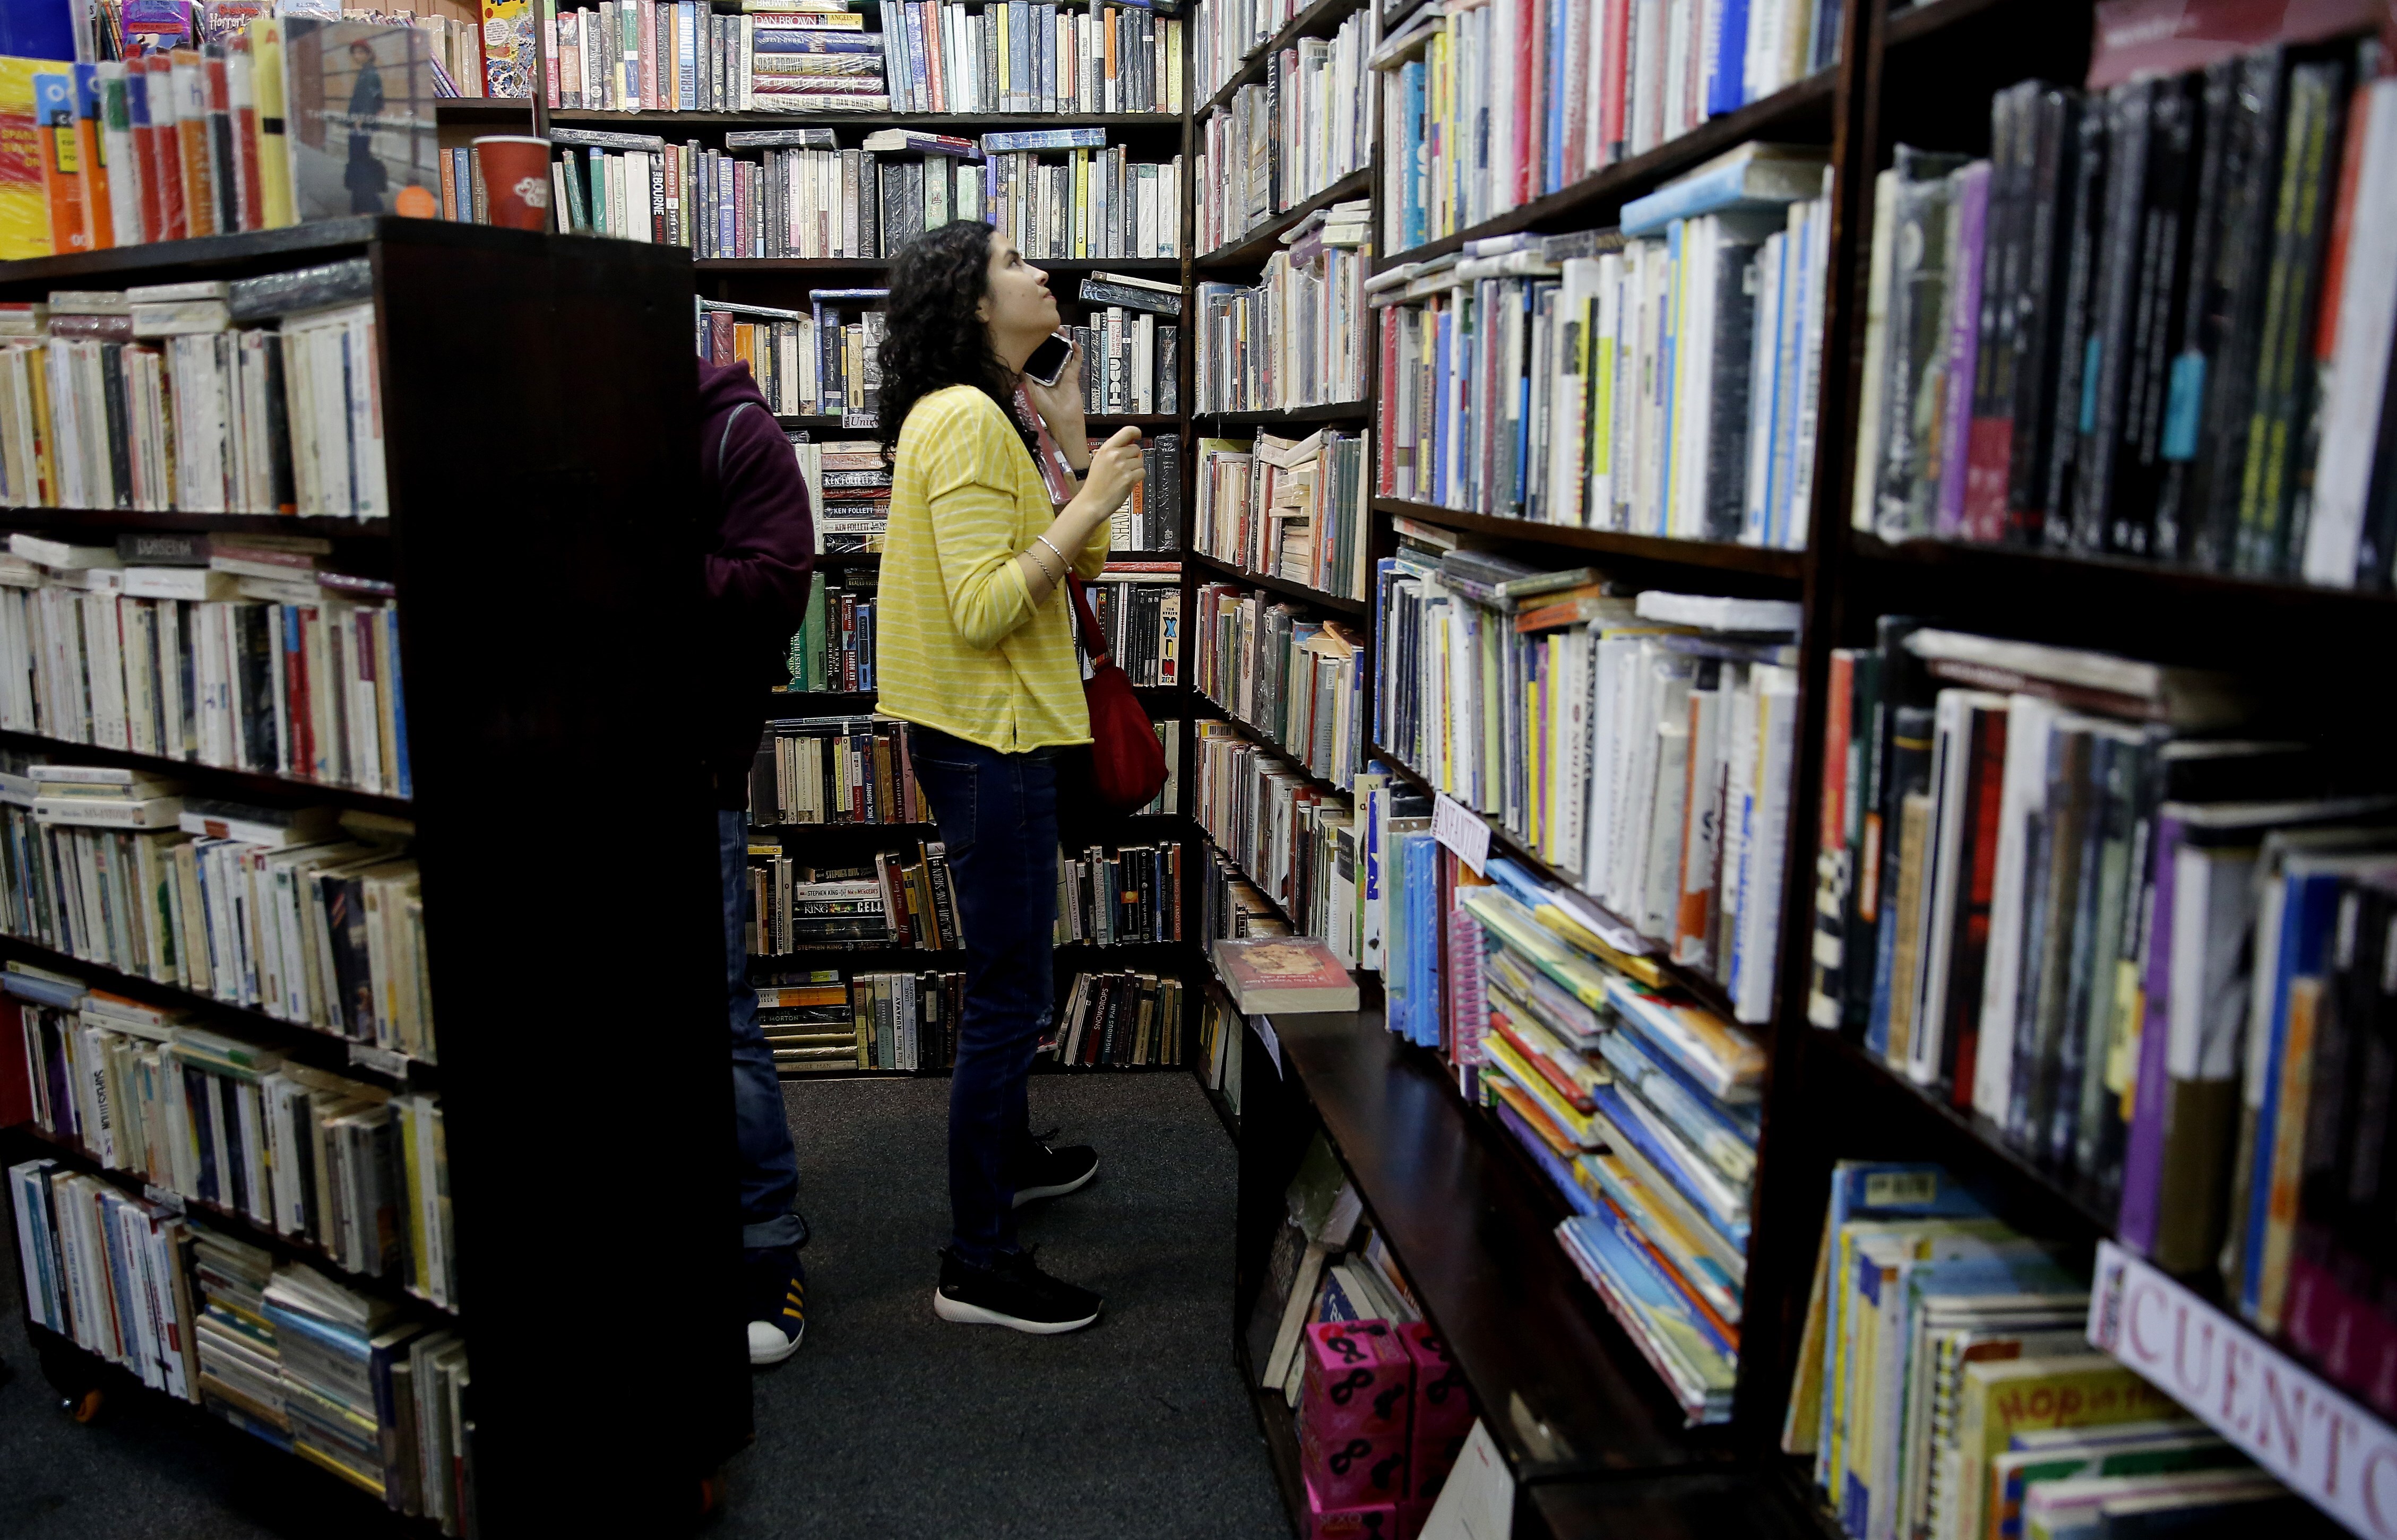 COMO HACER QUE TE PASEN COSAS BUENAS   Librería Colombiana